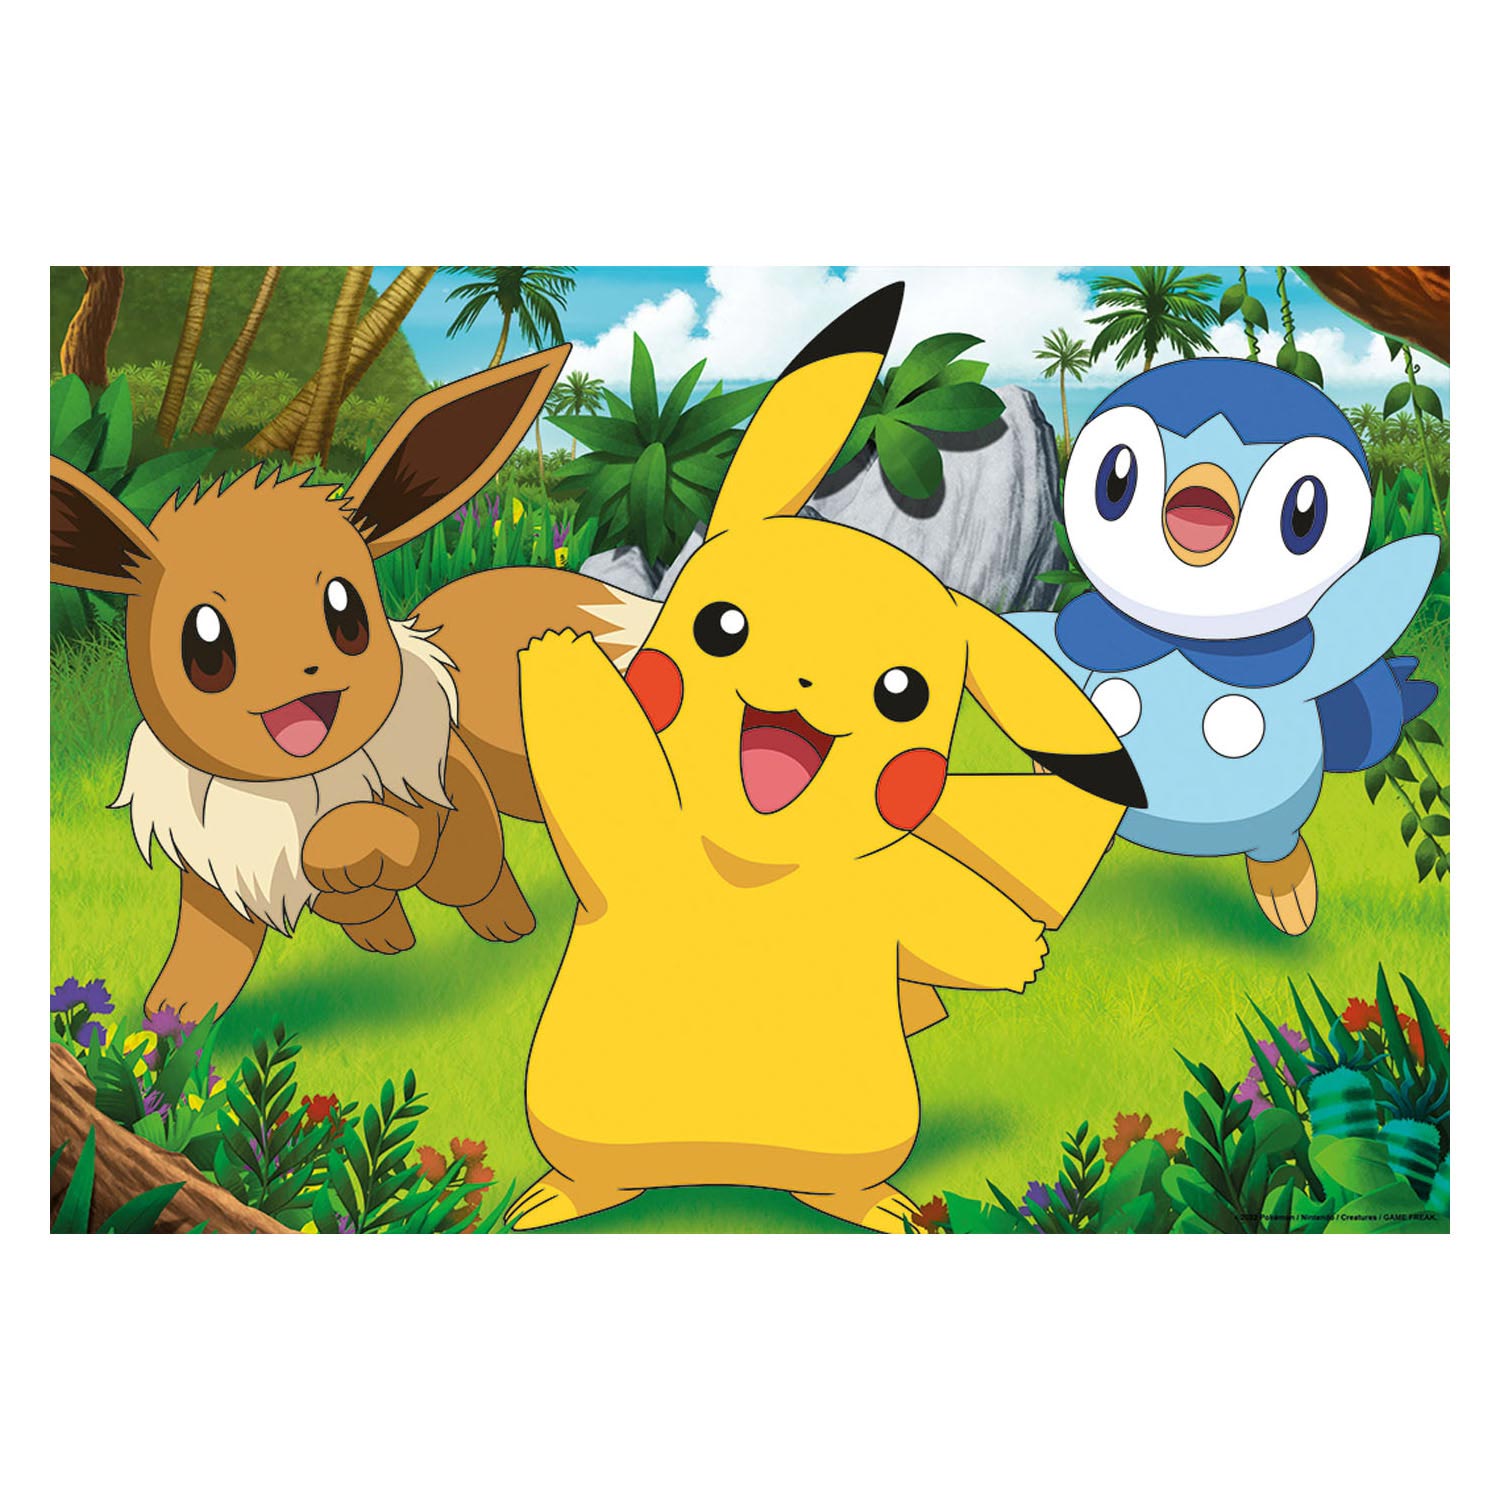 Ravensburger Puzzle - Pikachu und seine Freunde, 2x24 Teile.